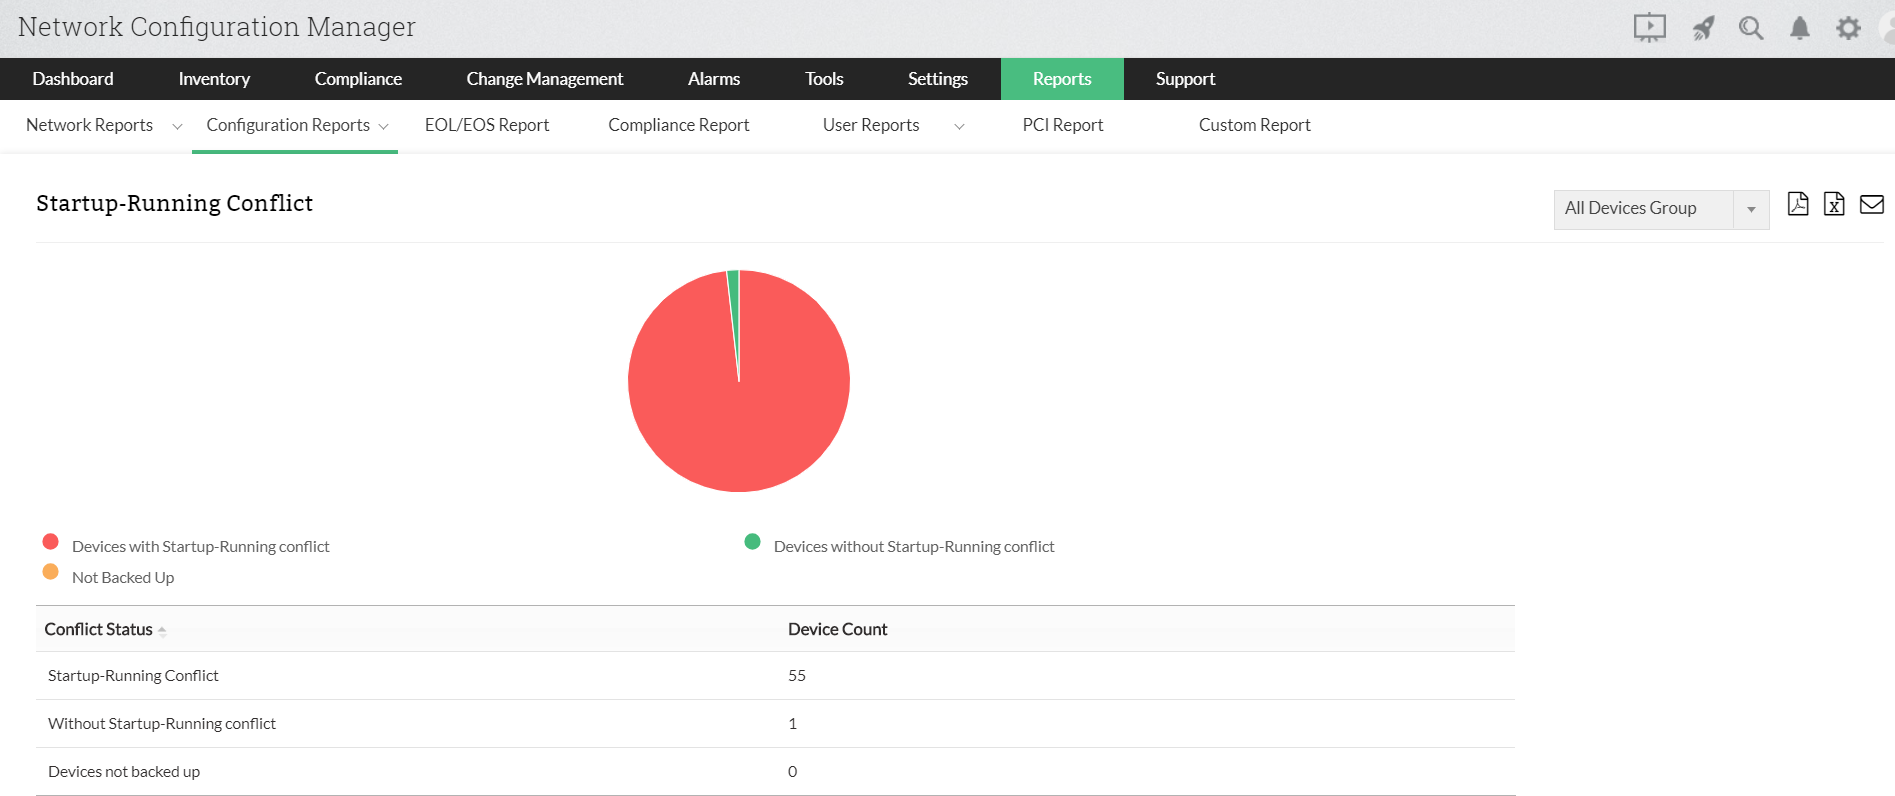 Dashboard de informes de conflictos de inicio-ejecución de Network Configuration Manager